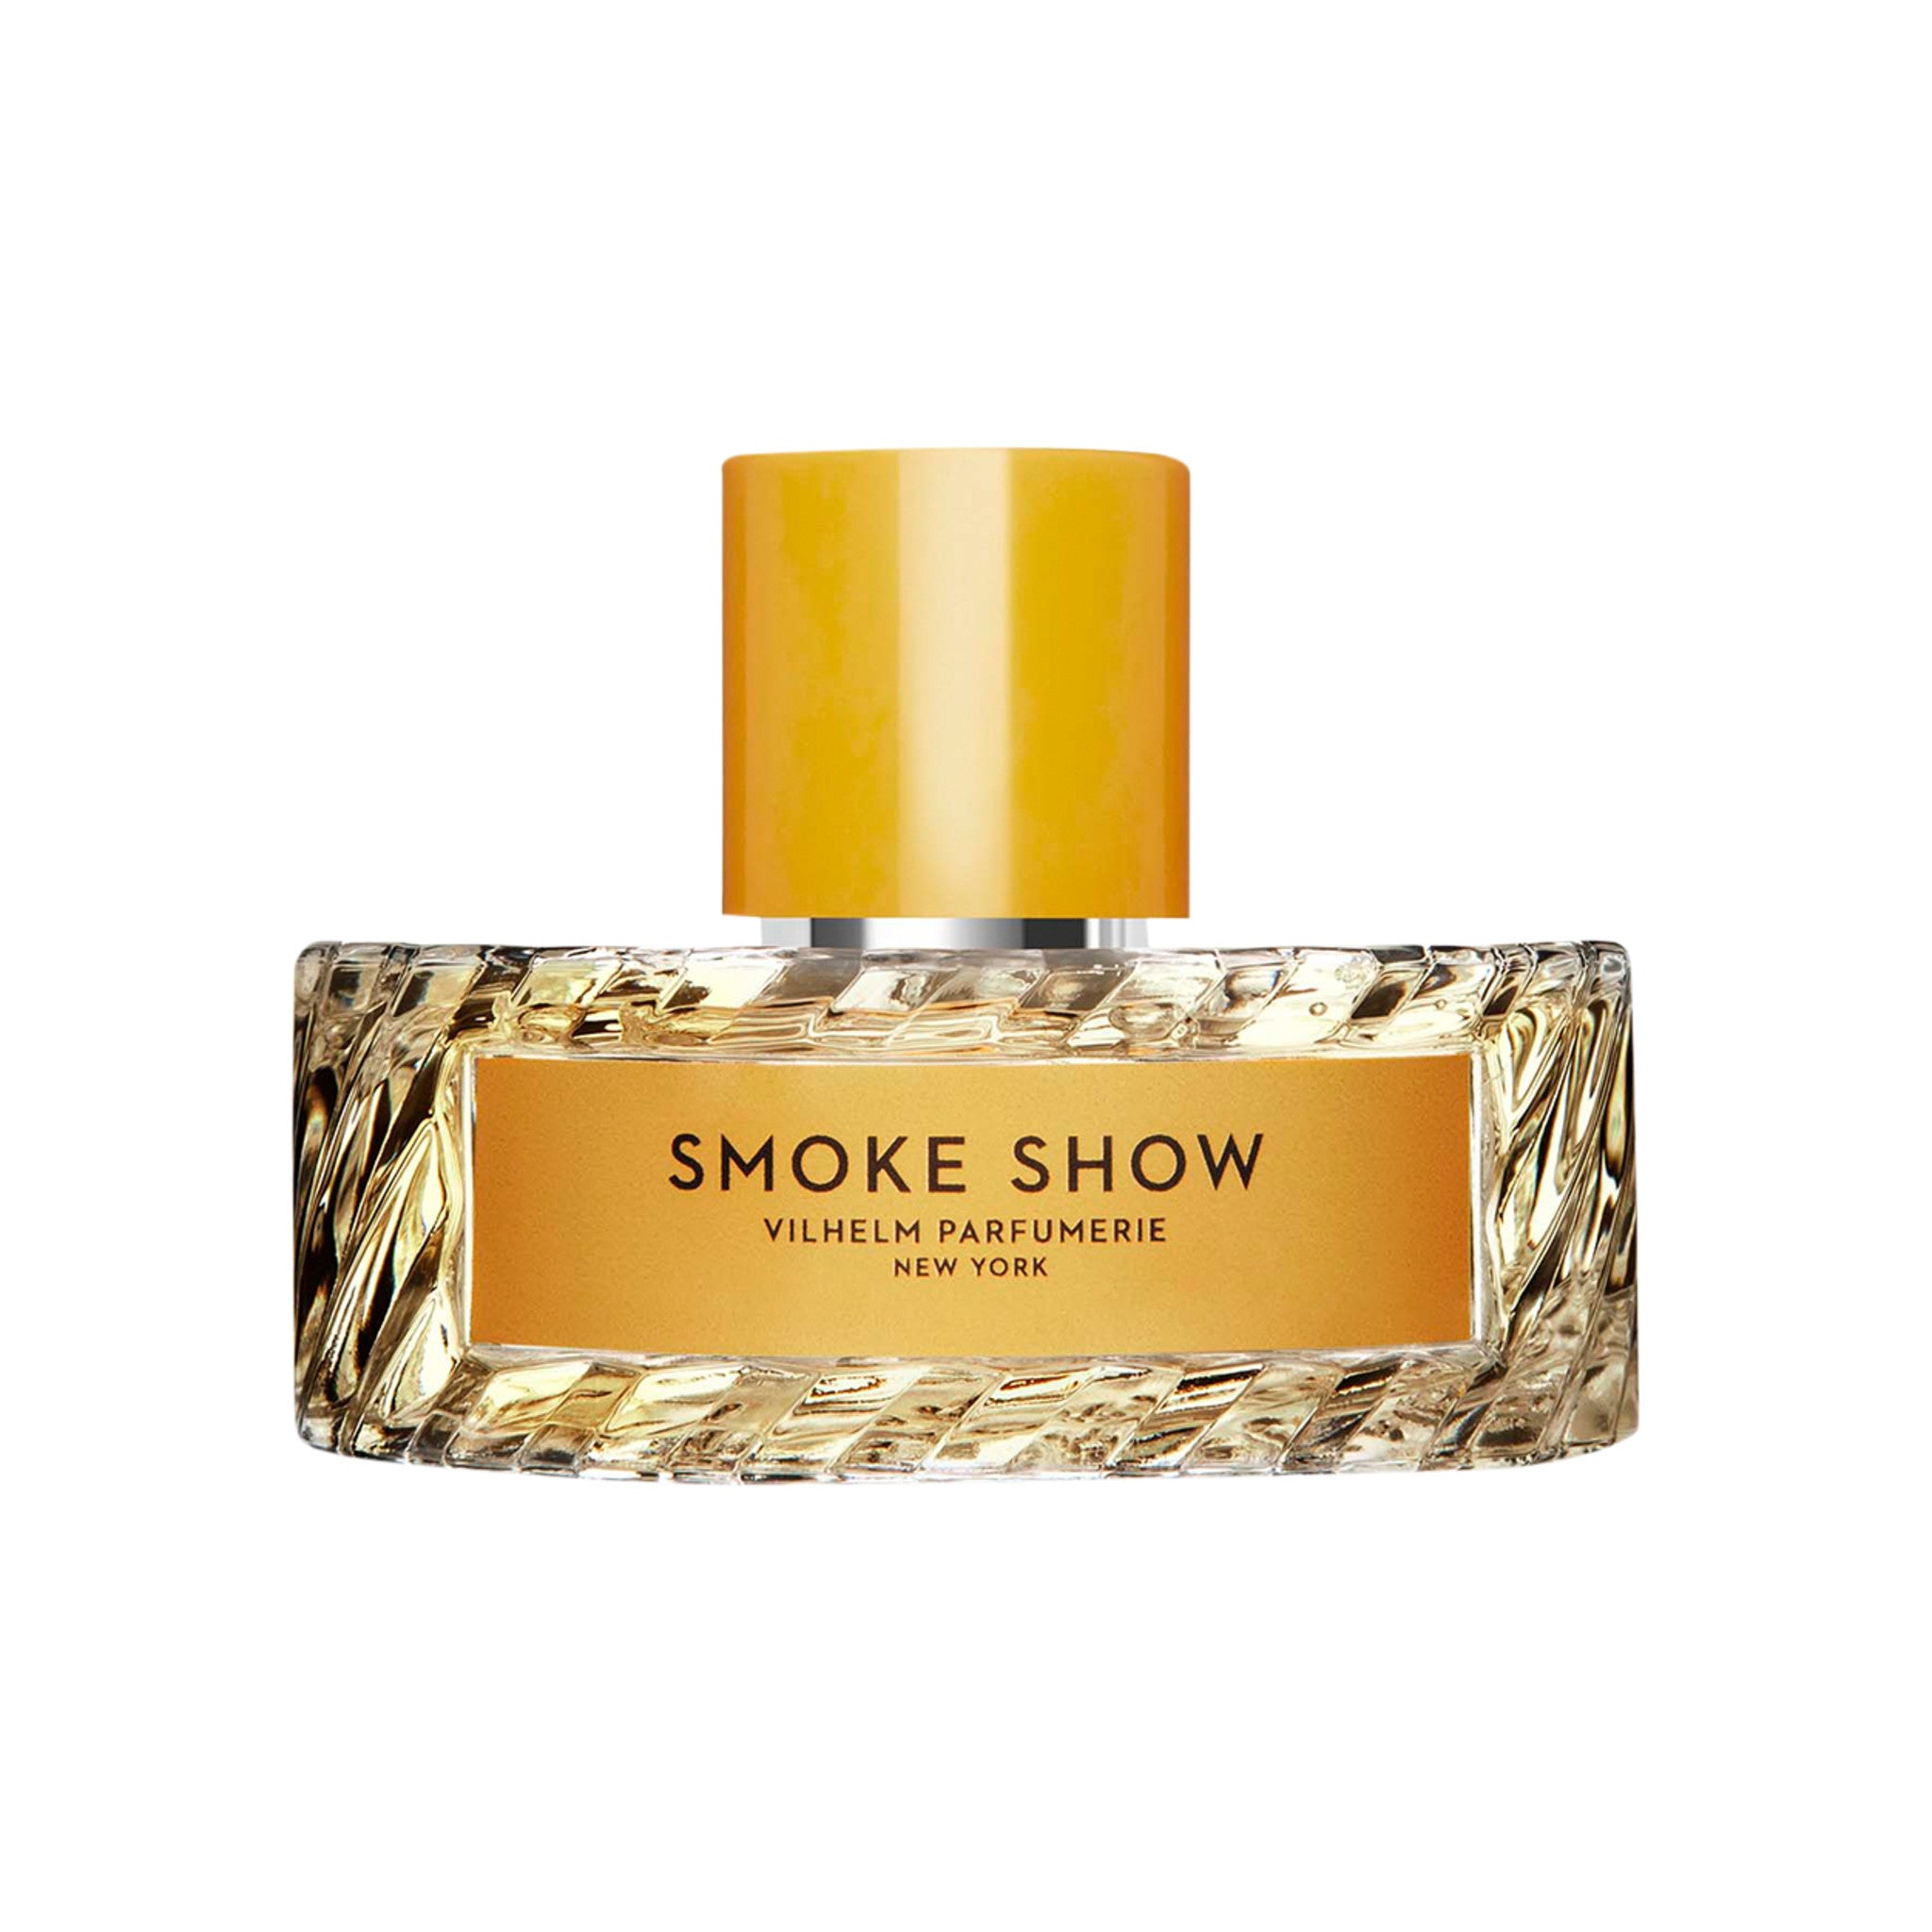 Vilhelm Parfumerie Smoke Show Eau de Parfum Size variant: 100 ml main image.